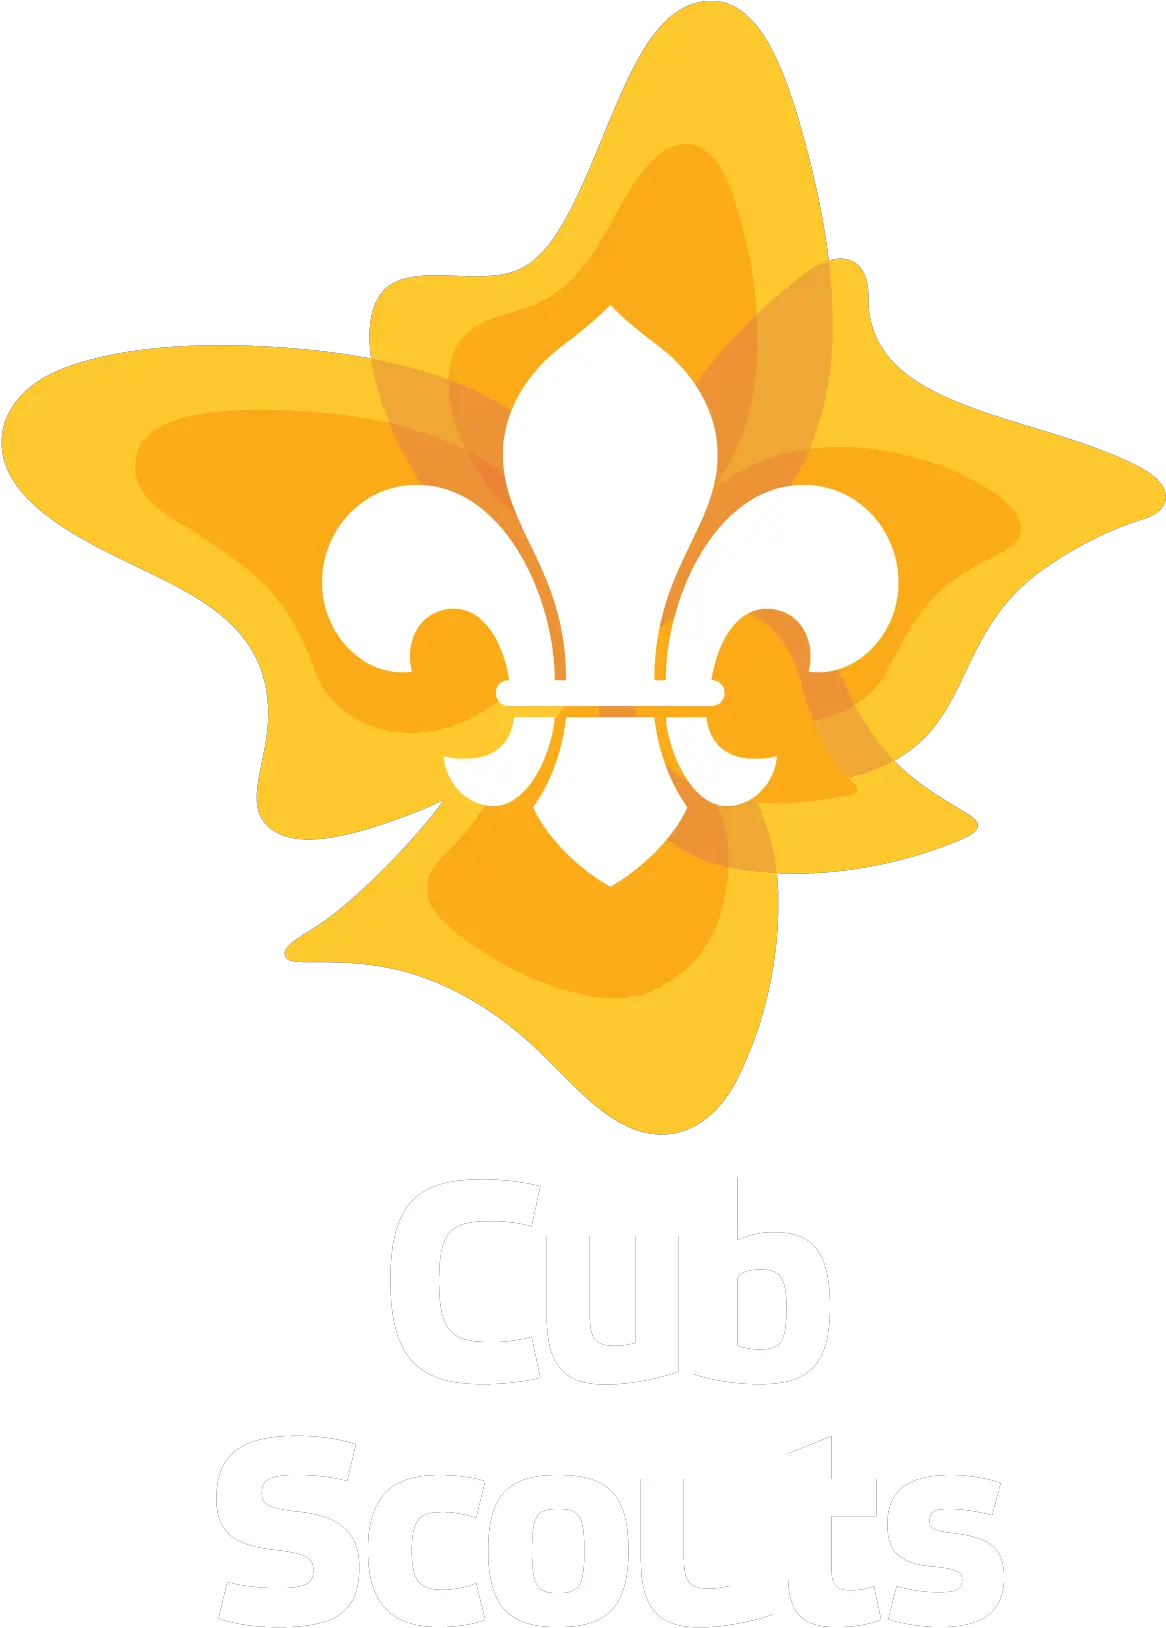 Scouts Australia Brand Centre Cub Scouts Australia Logo Png Cub Scout Logo Vector